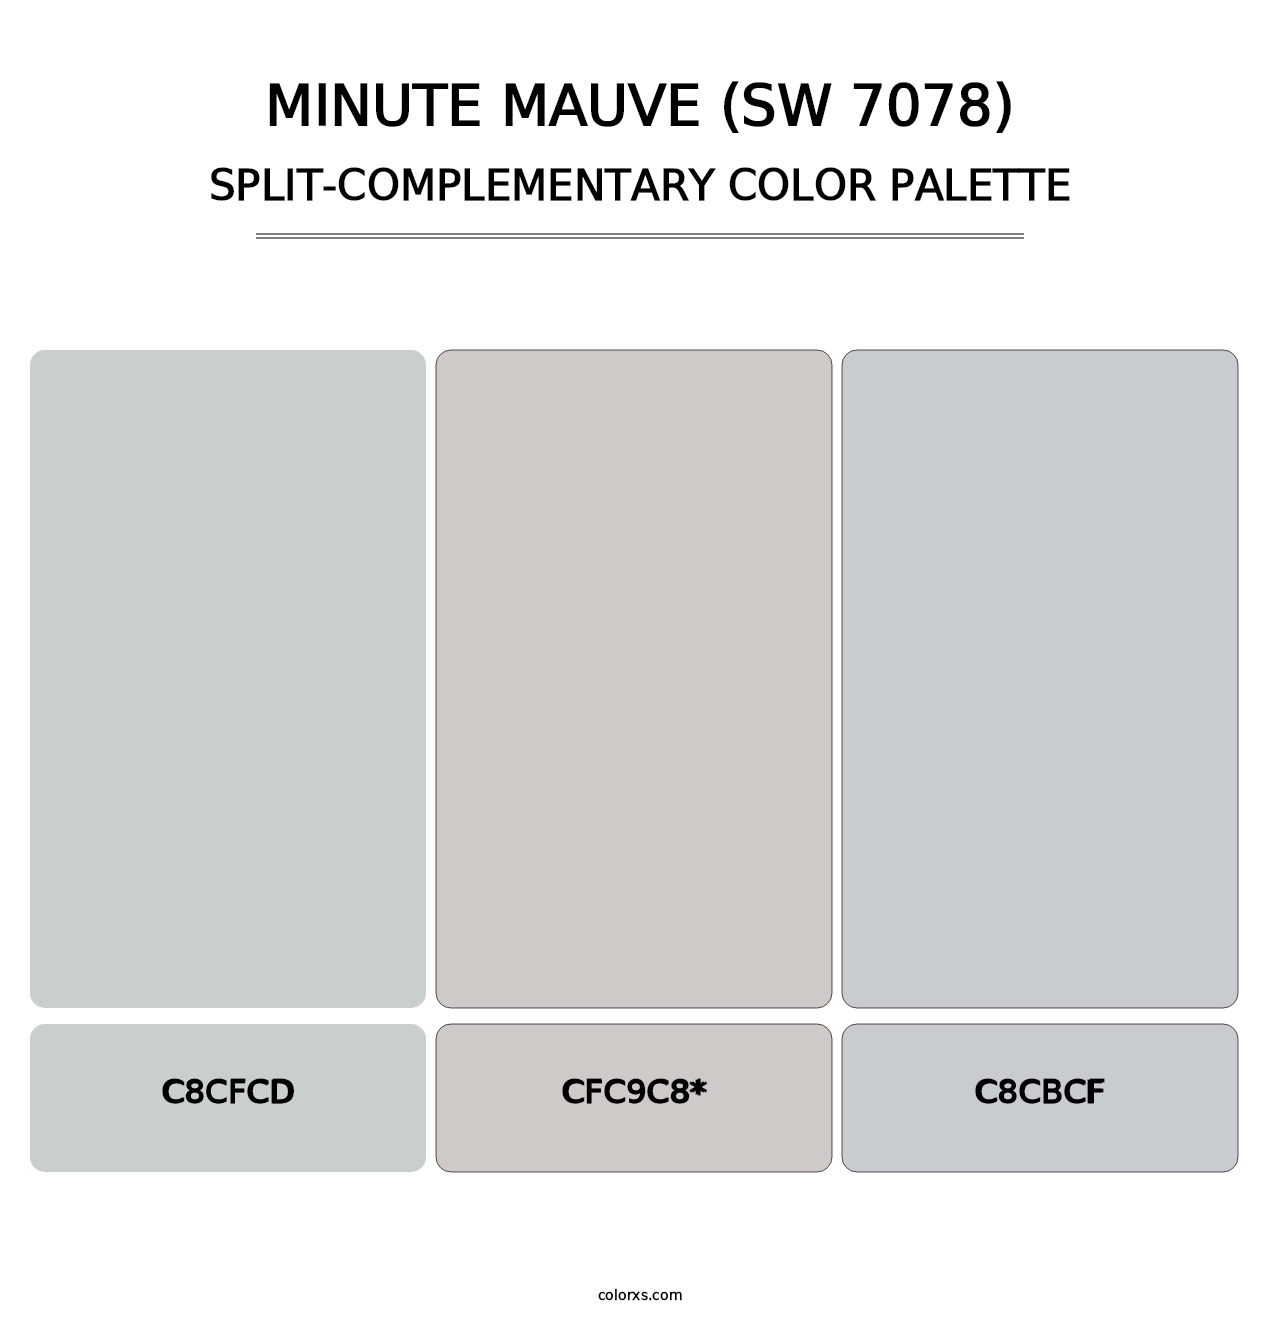 Minute Mauve (SW 7078) - Split-Complementary Color Palette